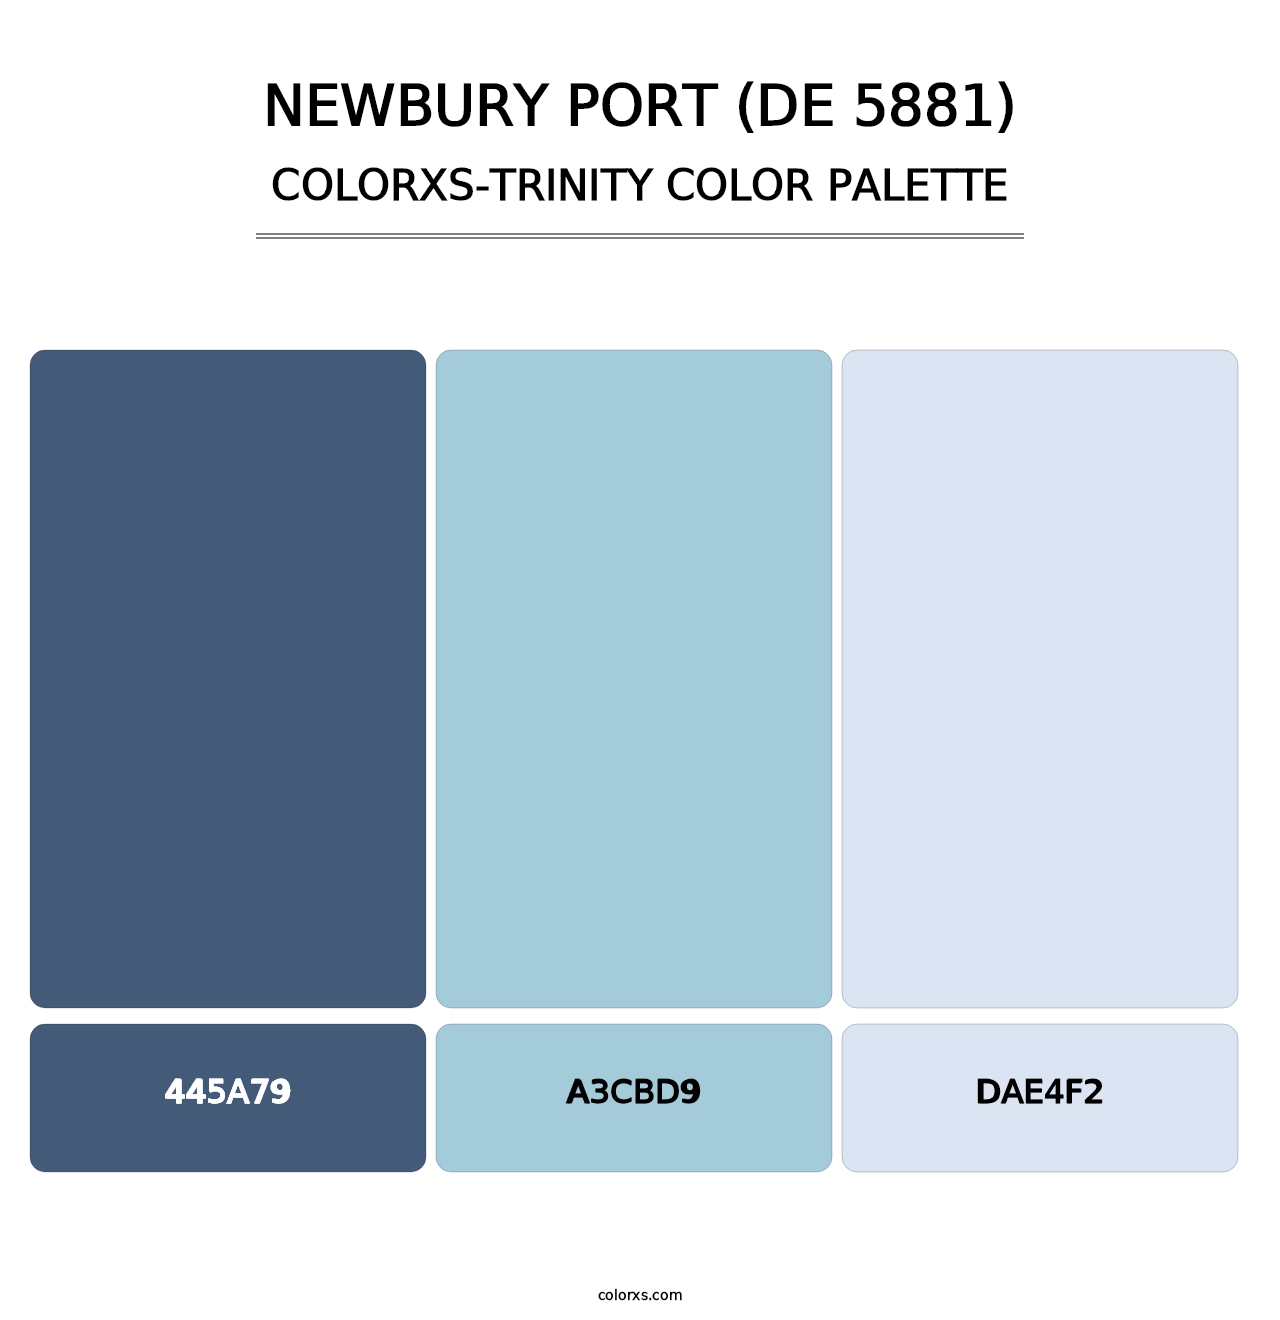 Newbury Port (DE 5881) - Colorxs Trinity Palette